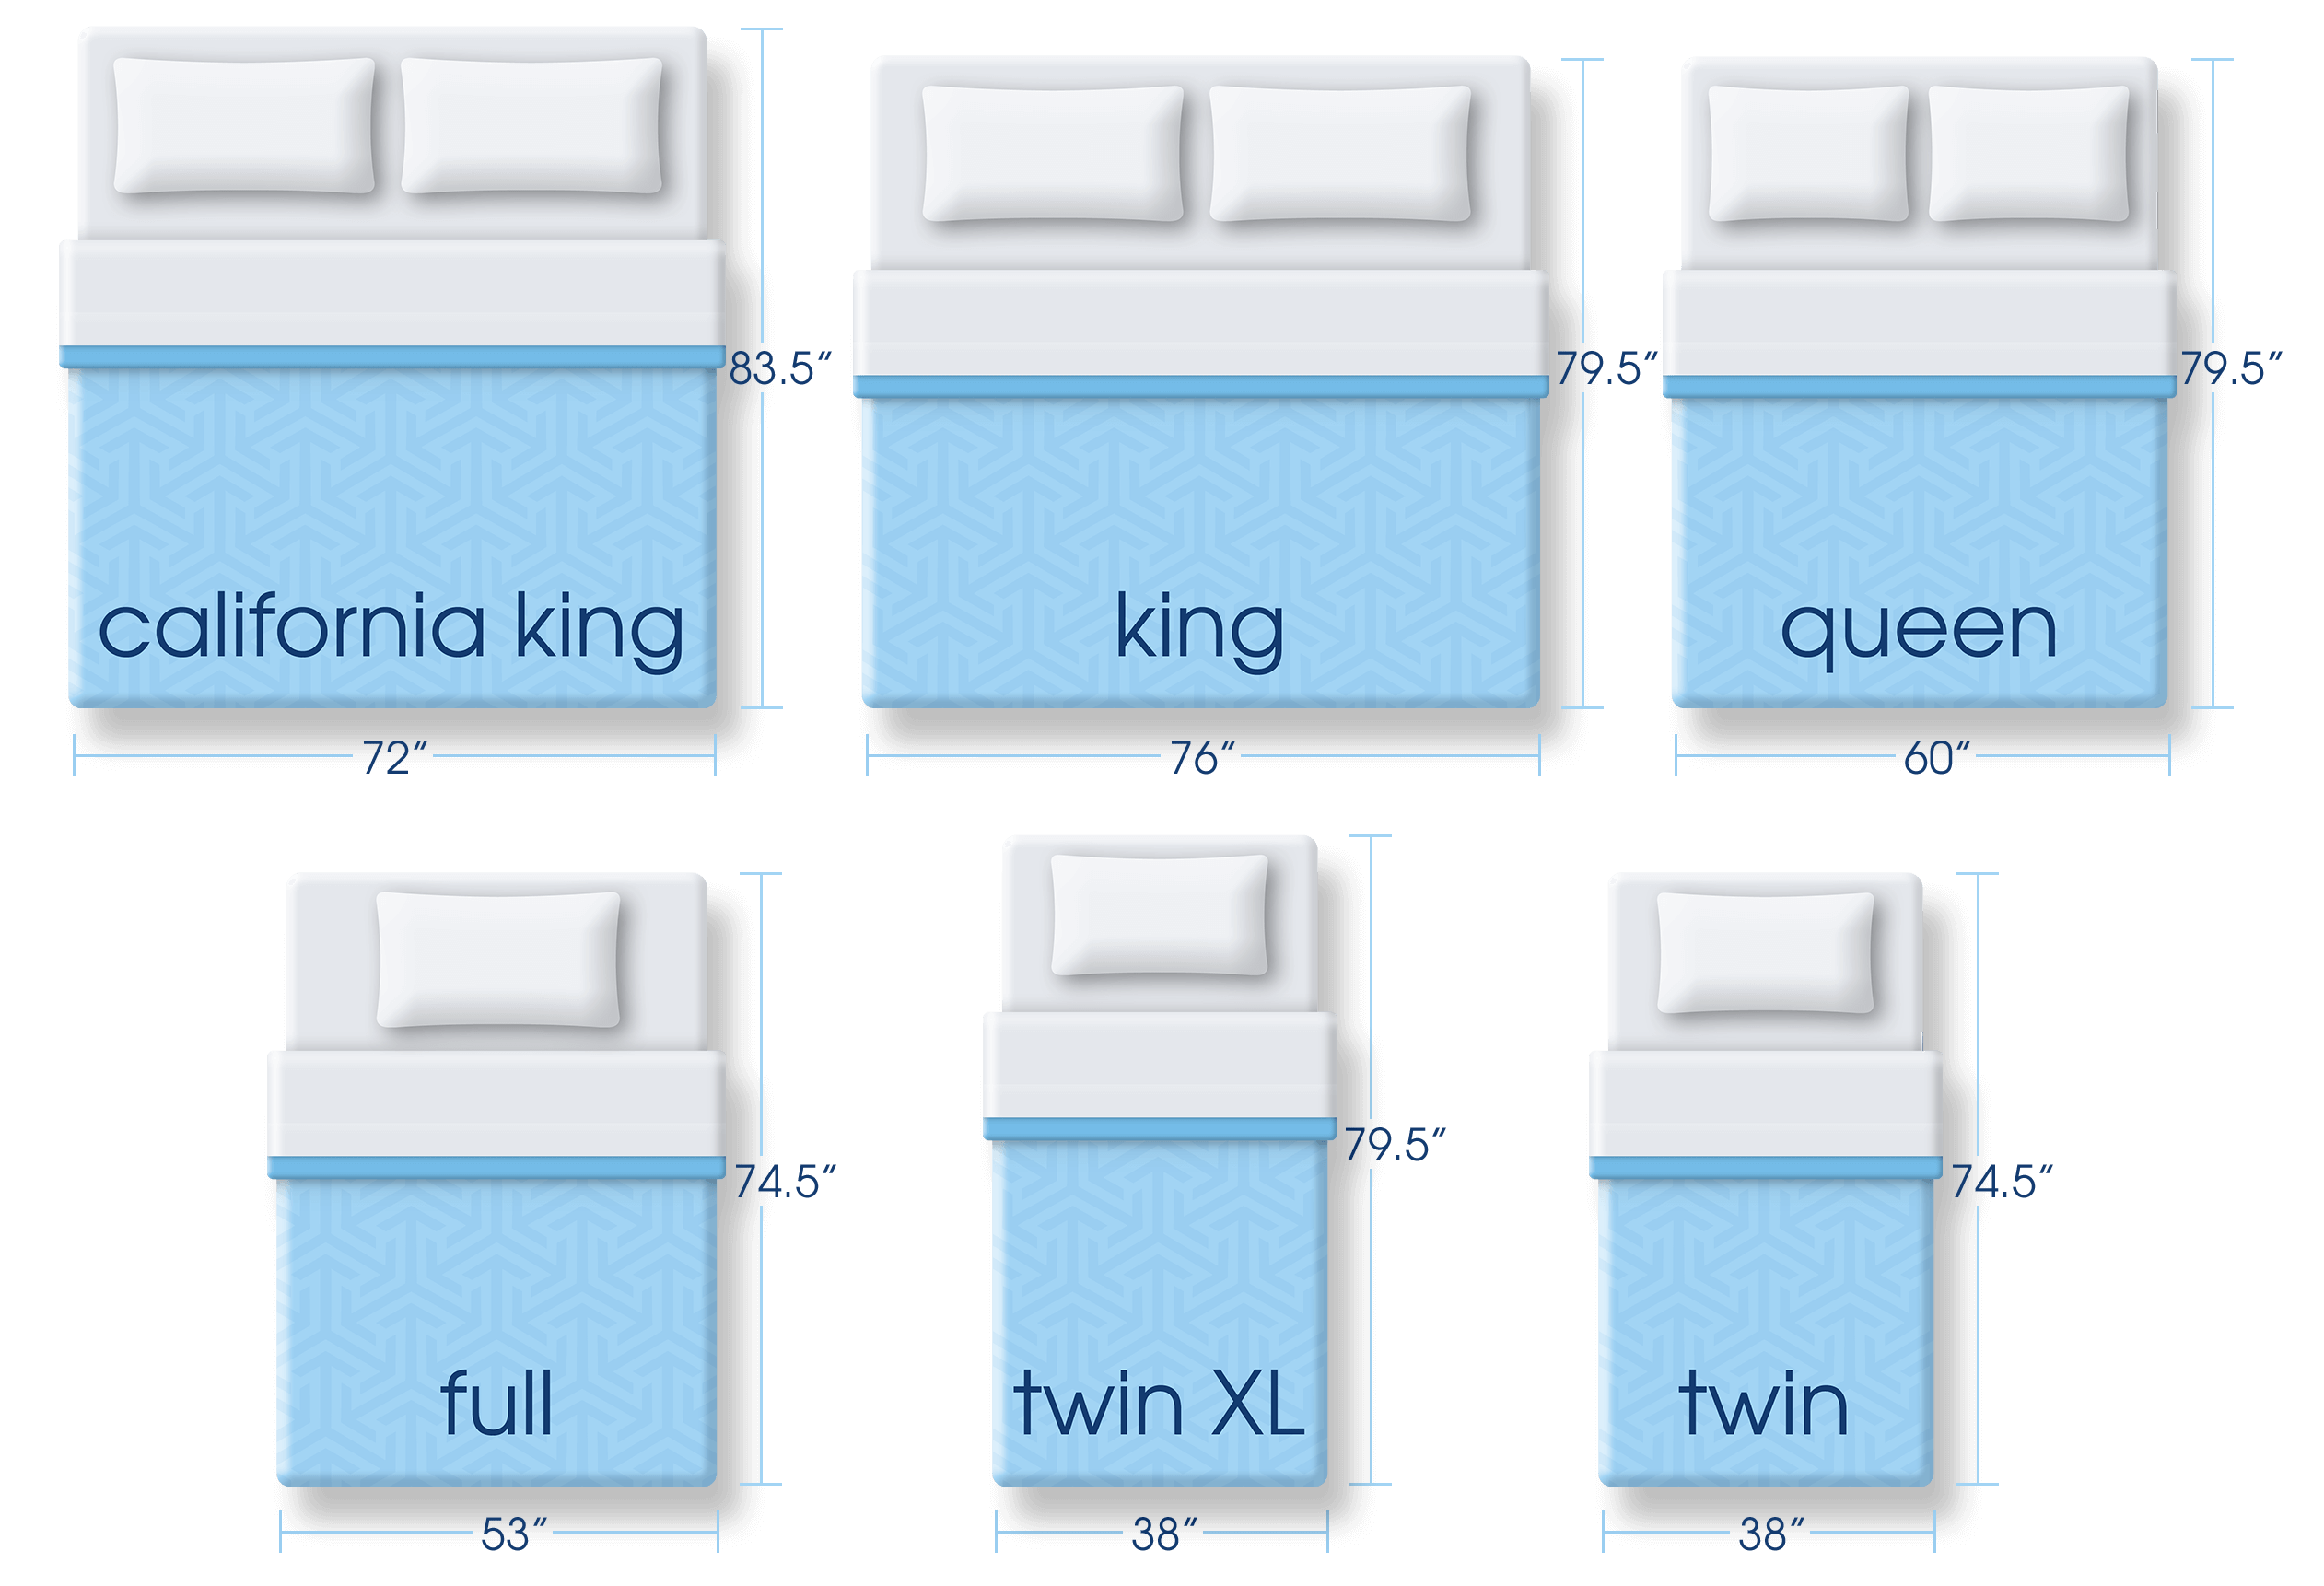 cost of queen size mattress